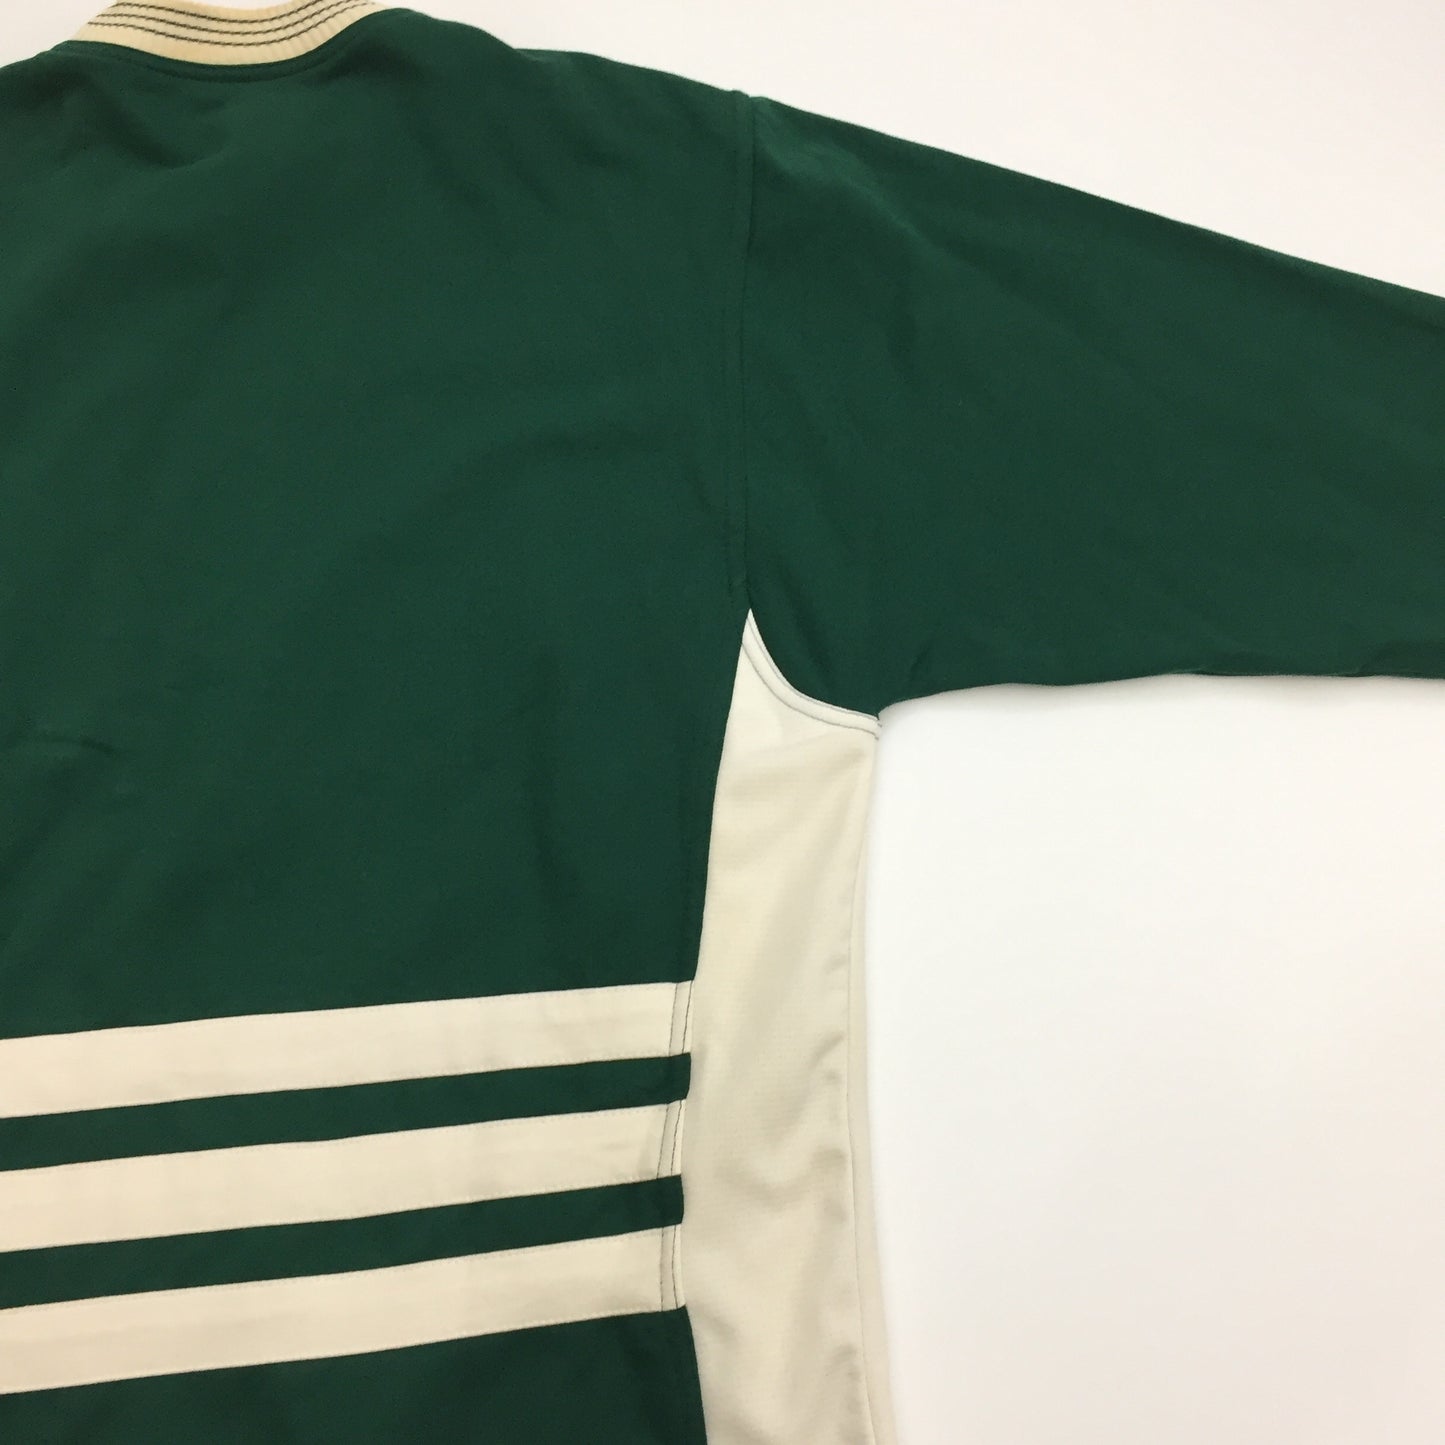 0123 Adidas Vintage Sweatshirt/Longsleeve